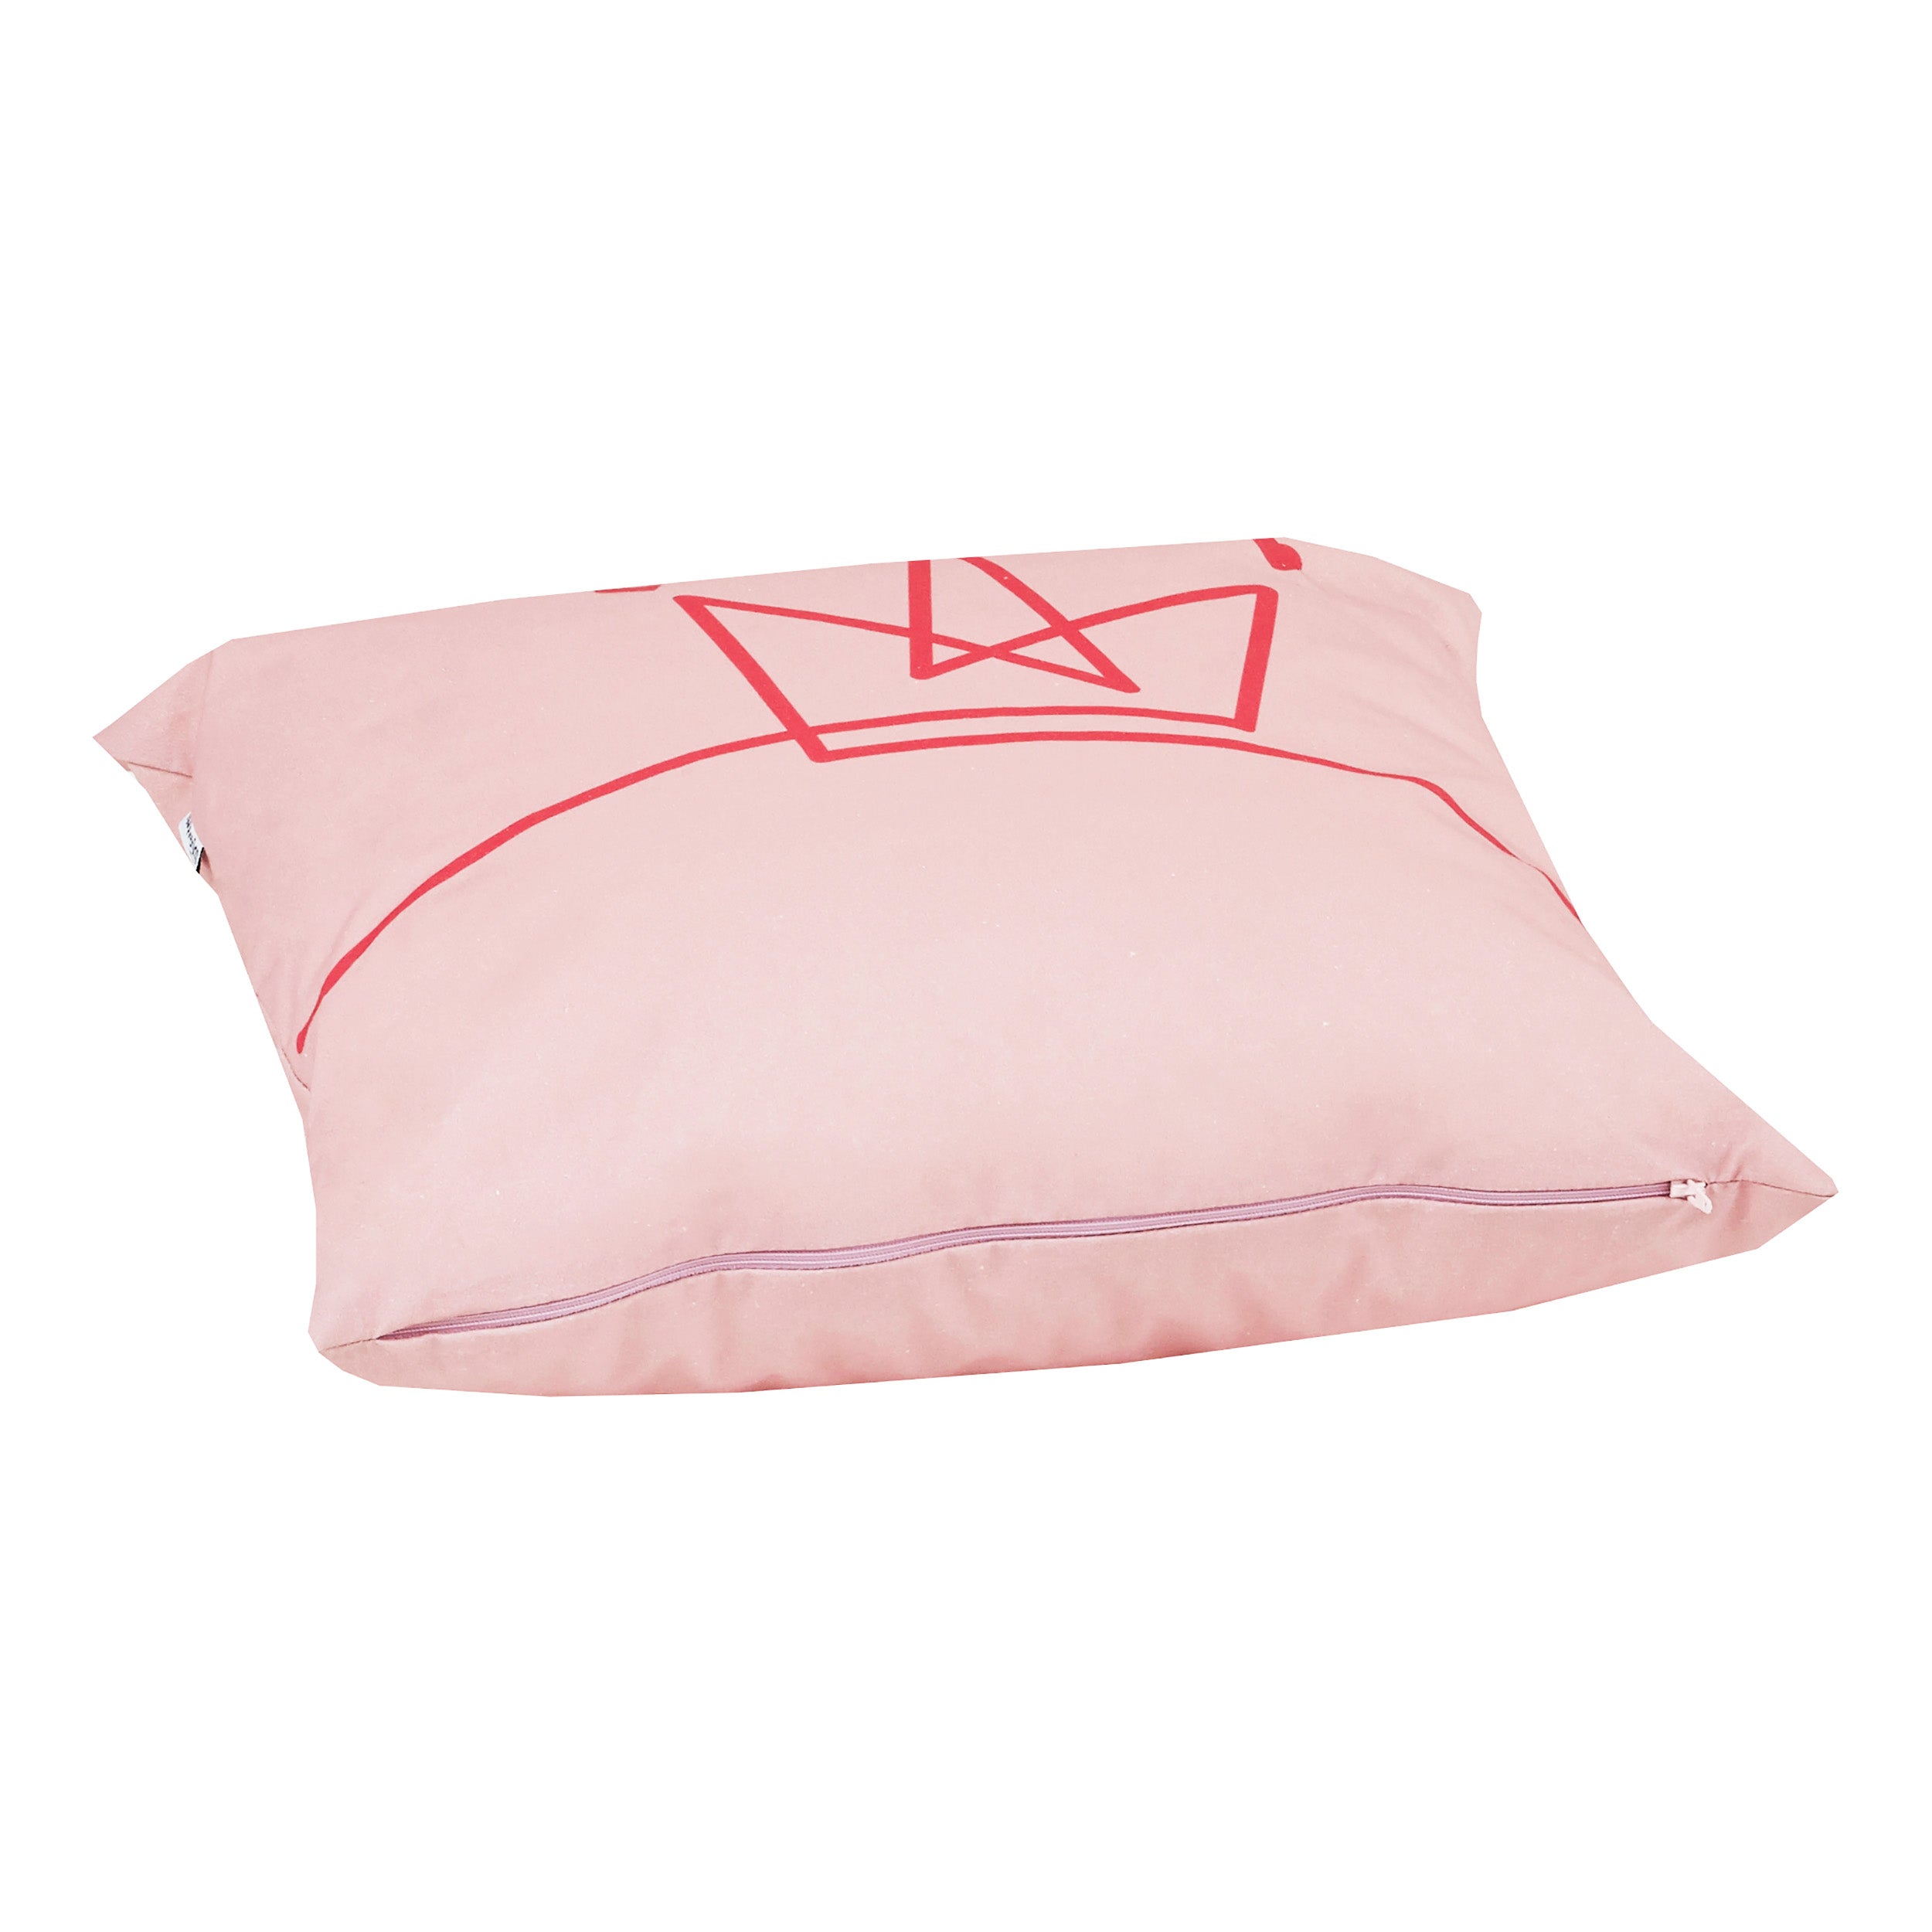 Hoppekids Princess Pillow